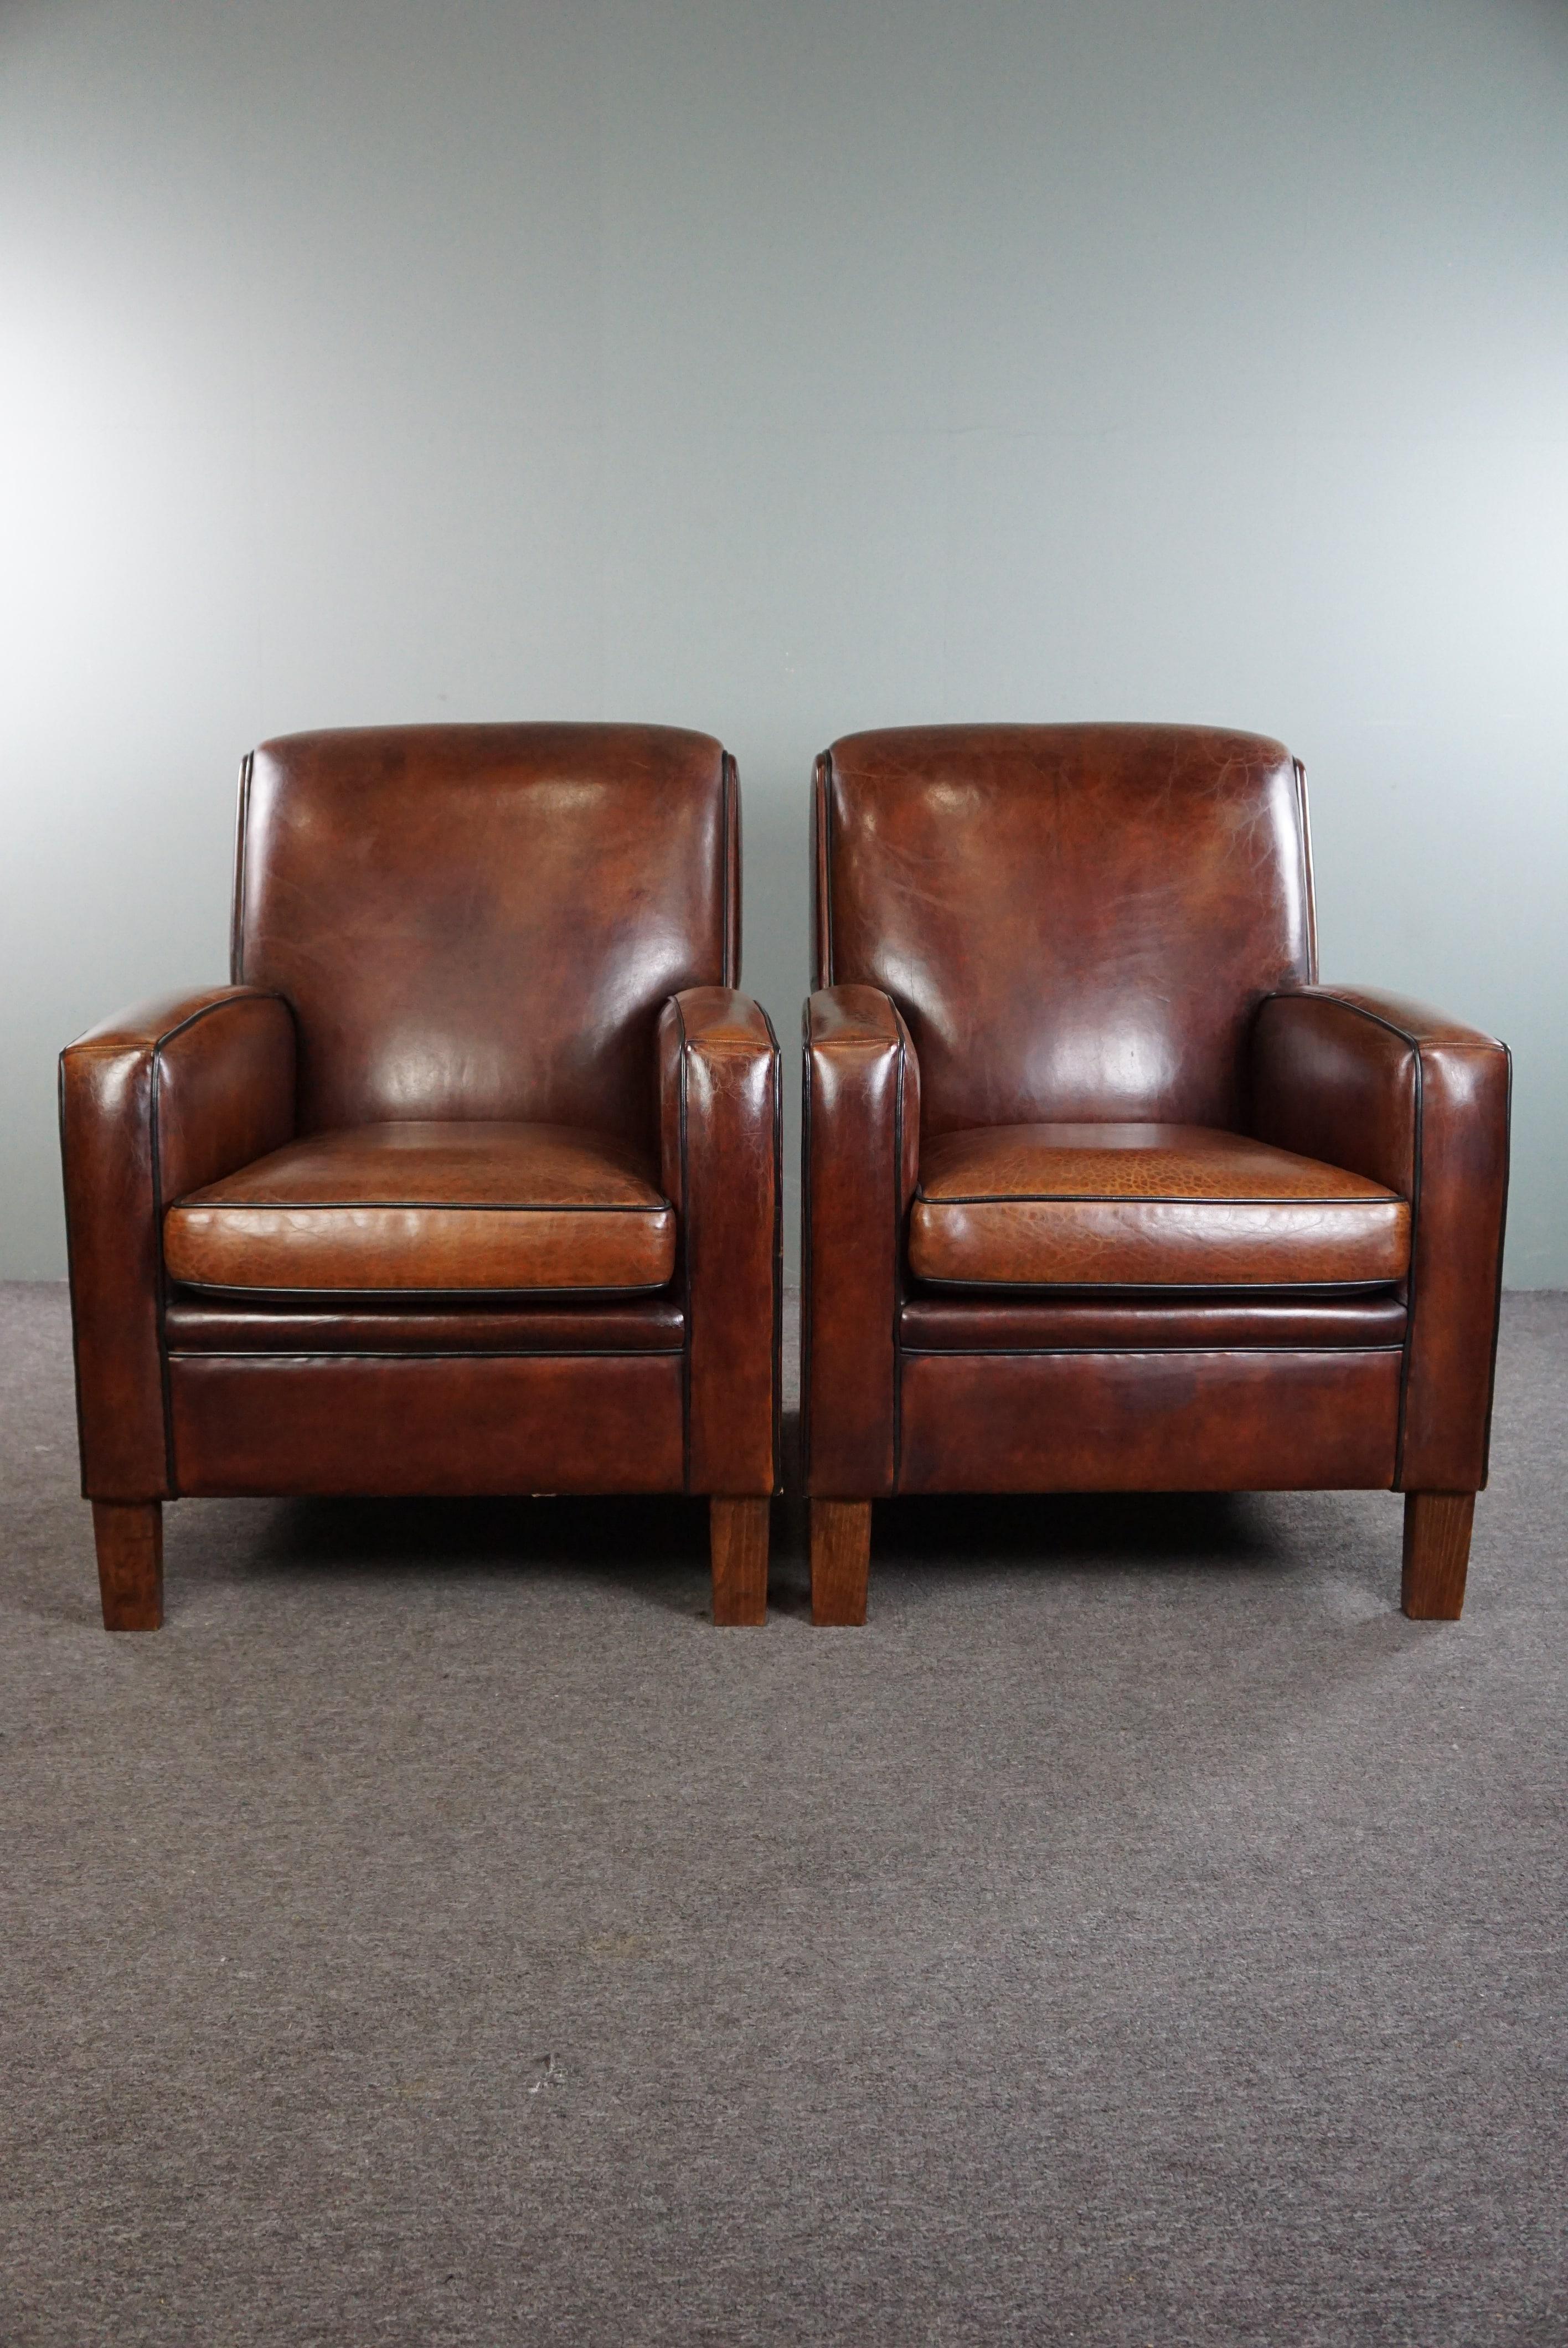 Offert : ce très bel ensemble de 2 fauteuils design Art Deco de qualité supérieure en cuir de mouton de première qualité.

Ce superbe ensemble, fabriqué à partir des matériaux les plus nobles, est doté d'un coussin d'assise amovible et offre un